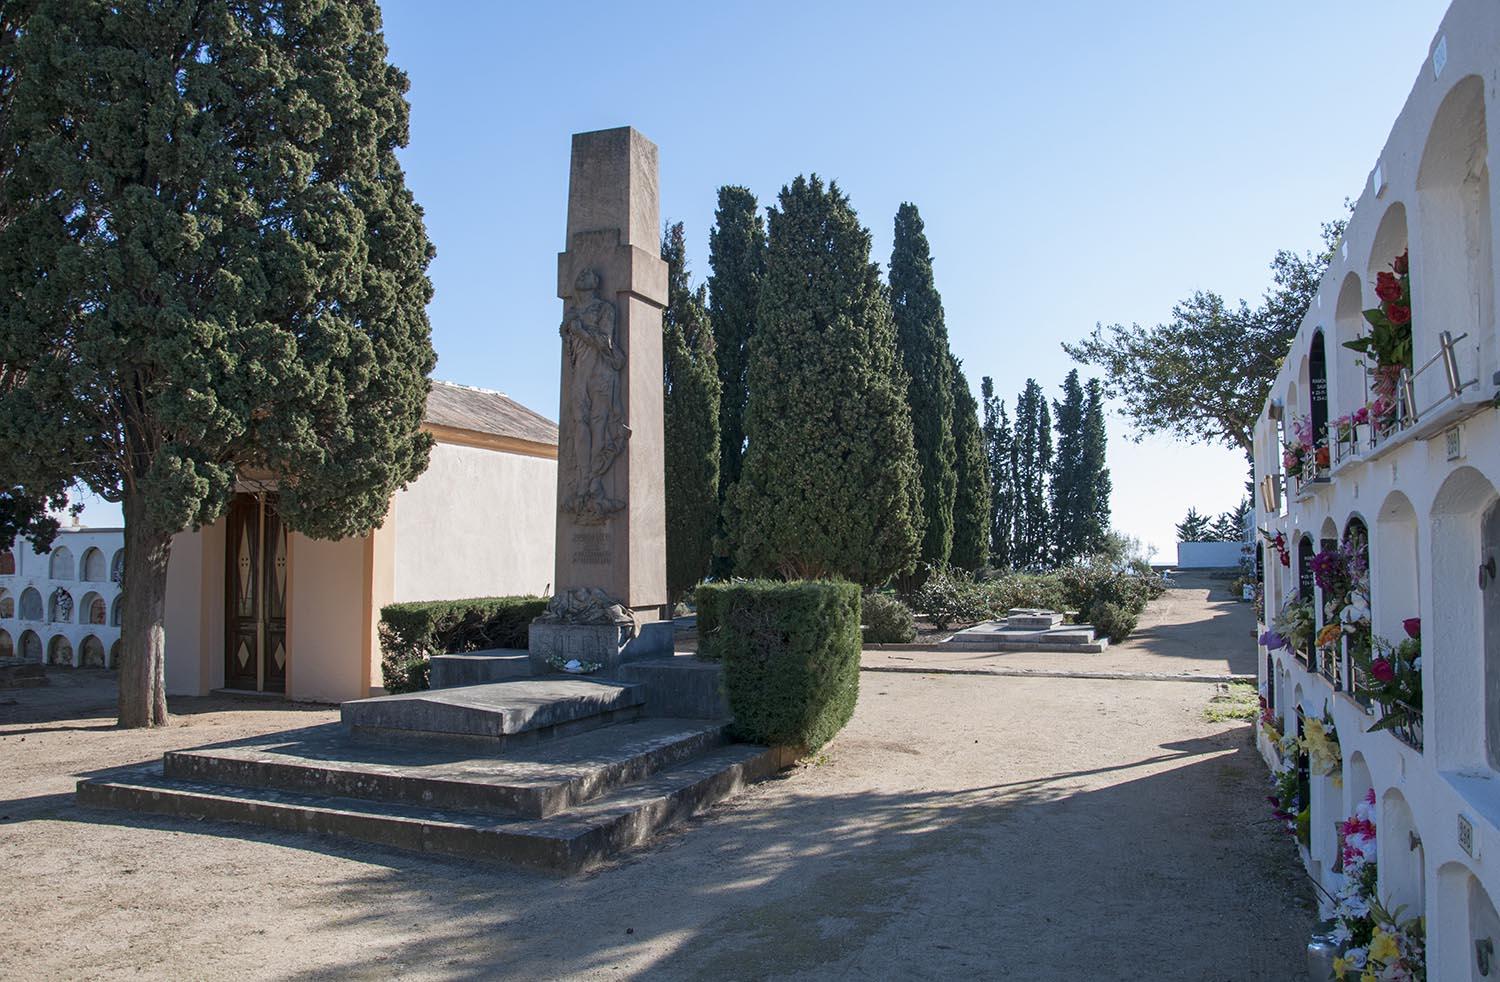 El cementiri de Caldes d’Estrac s’estén sobre el cim d’un pujol que domina el poble. La planta és allargada com podem veure en questa foto.